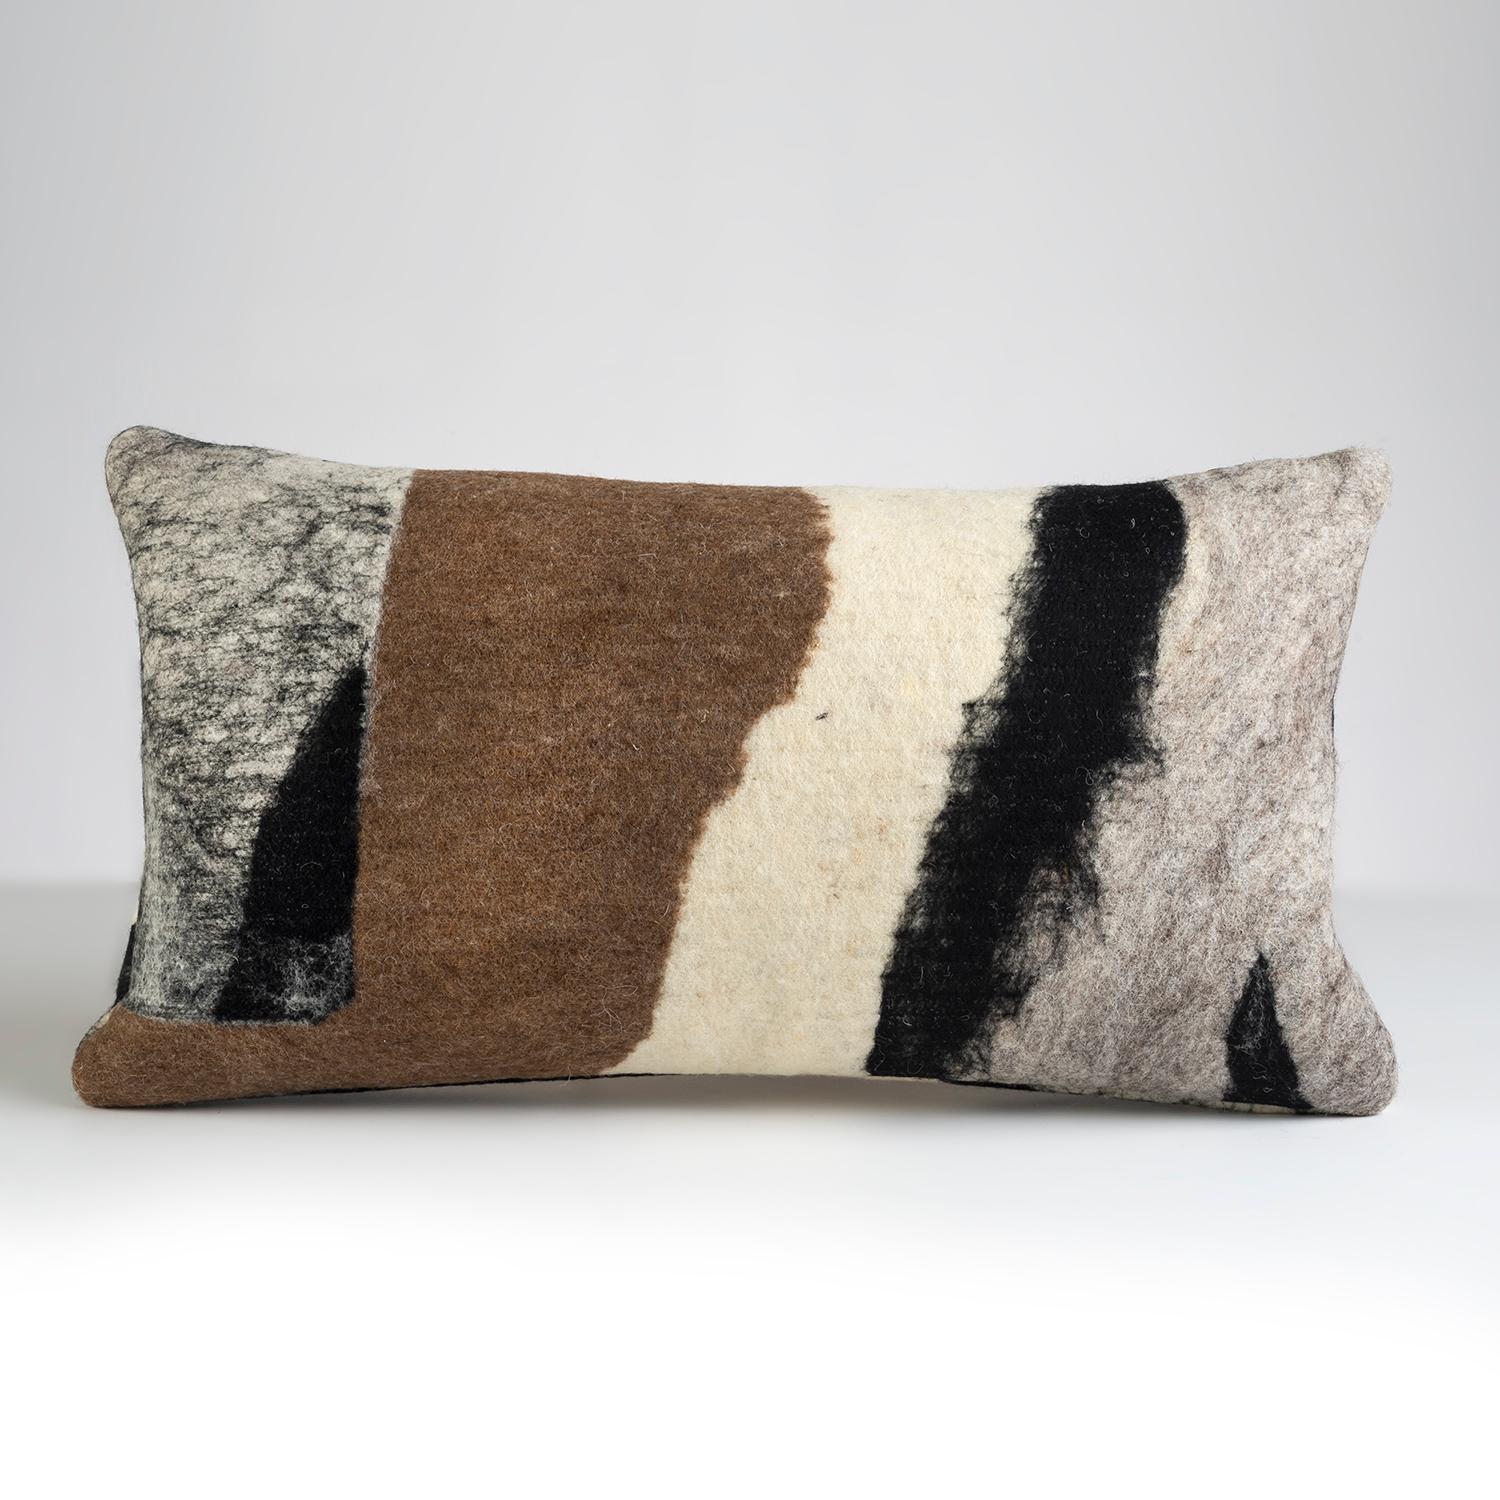 Design moderne d'une des fibres les plus anciennes de la nature : la laine. Moulu dans notre atelier de design où nous 